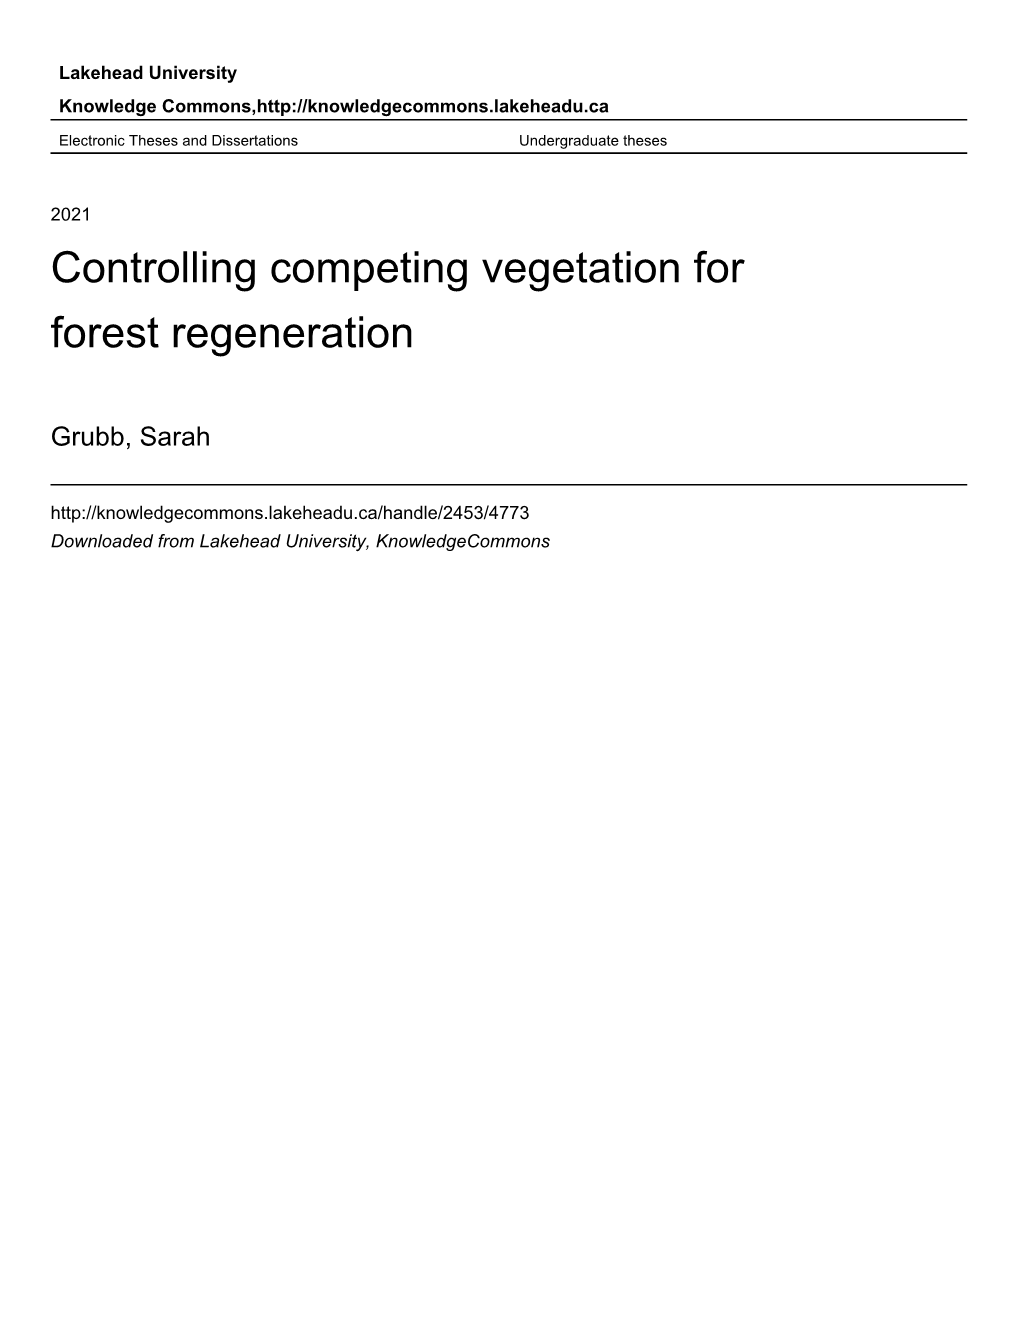 Controlling Competing Vegetation for Forest Regeneration